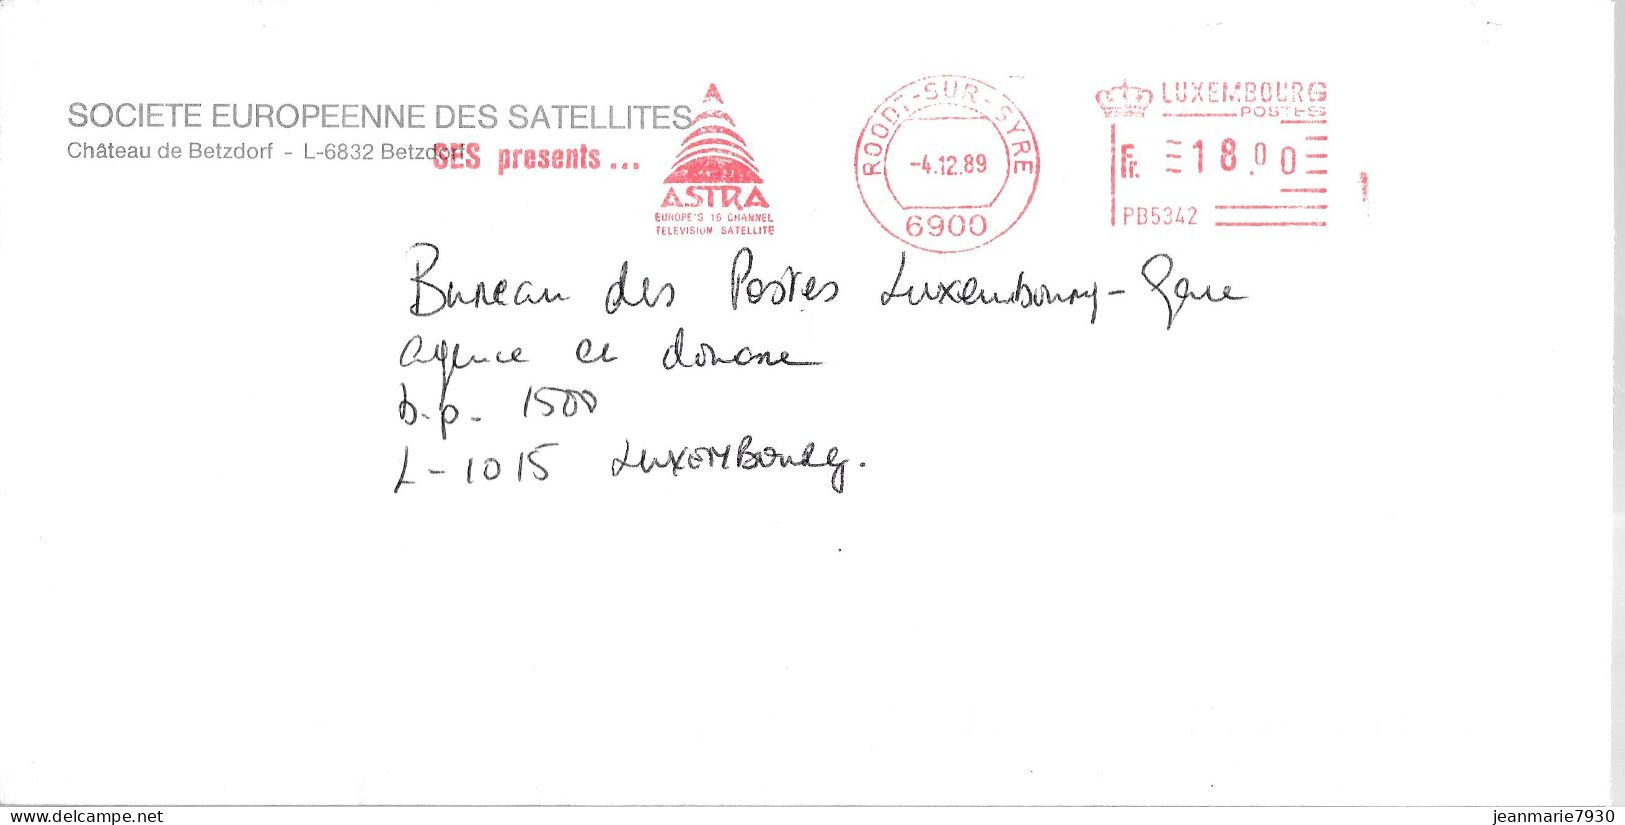 H346 - LETTRE DE ROODT SUR SYRE DU 04/12/89 - ASTRA SATELLITES - Macchine Per Obliterare (EMA)